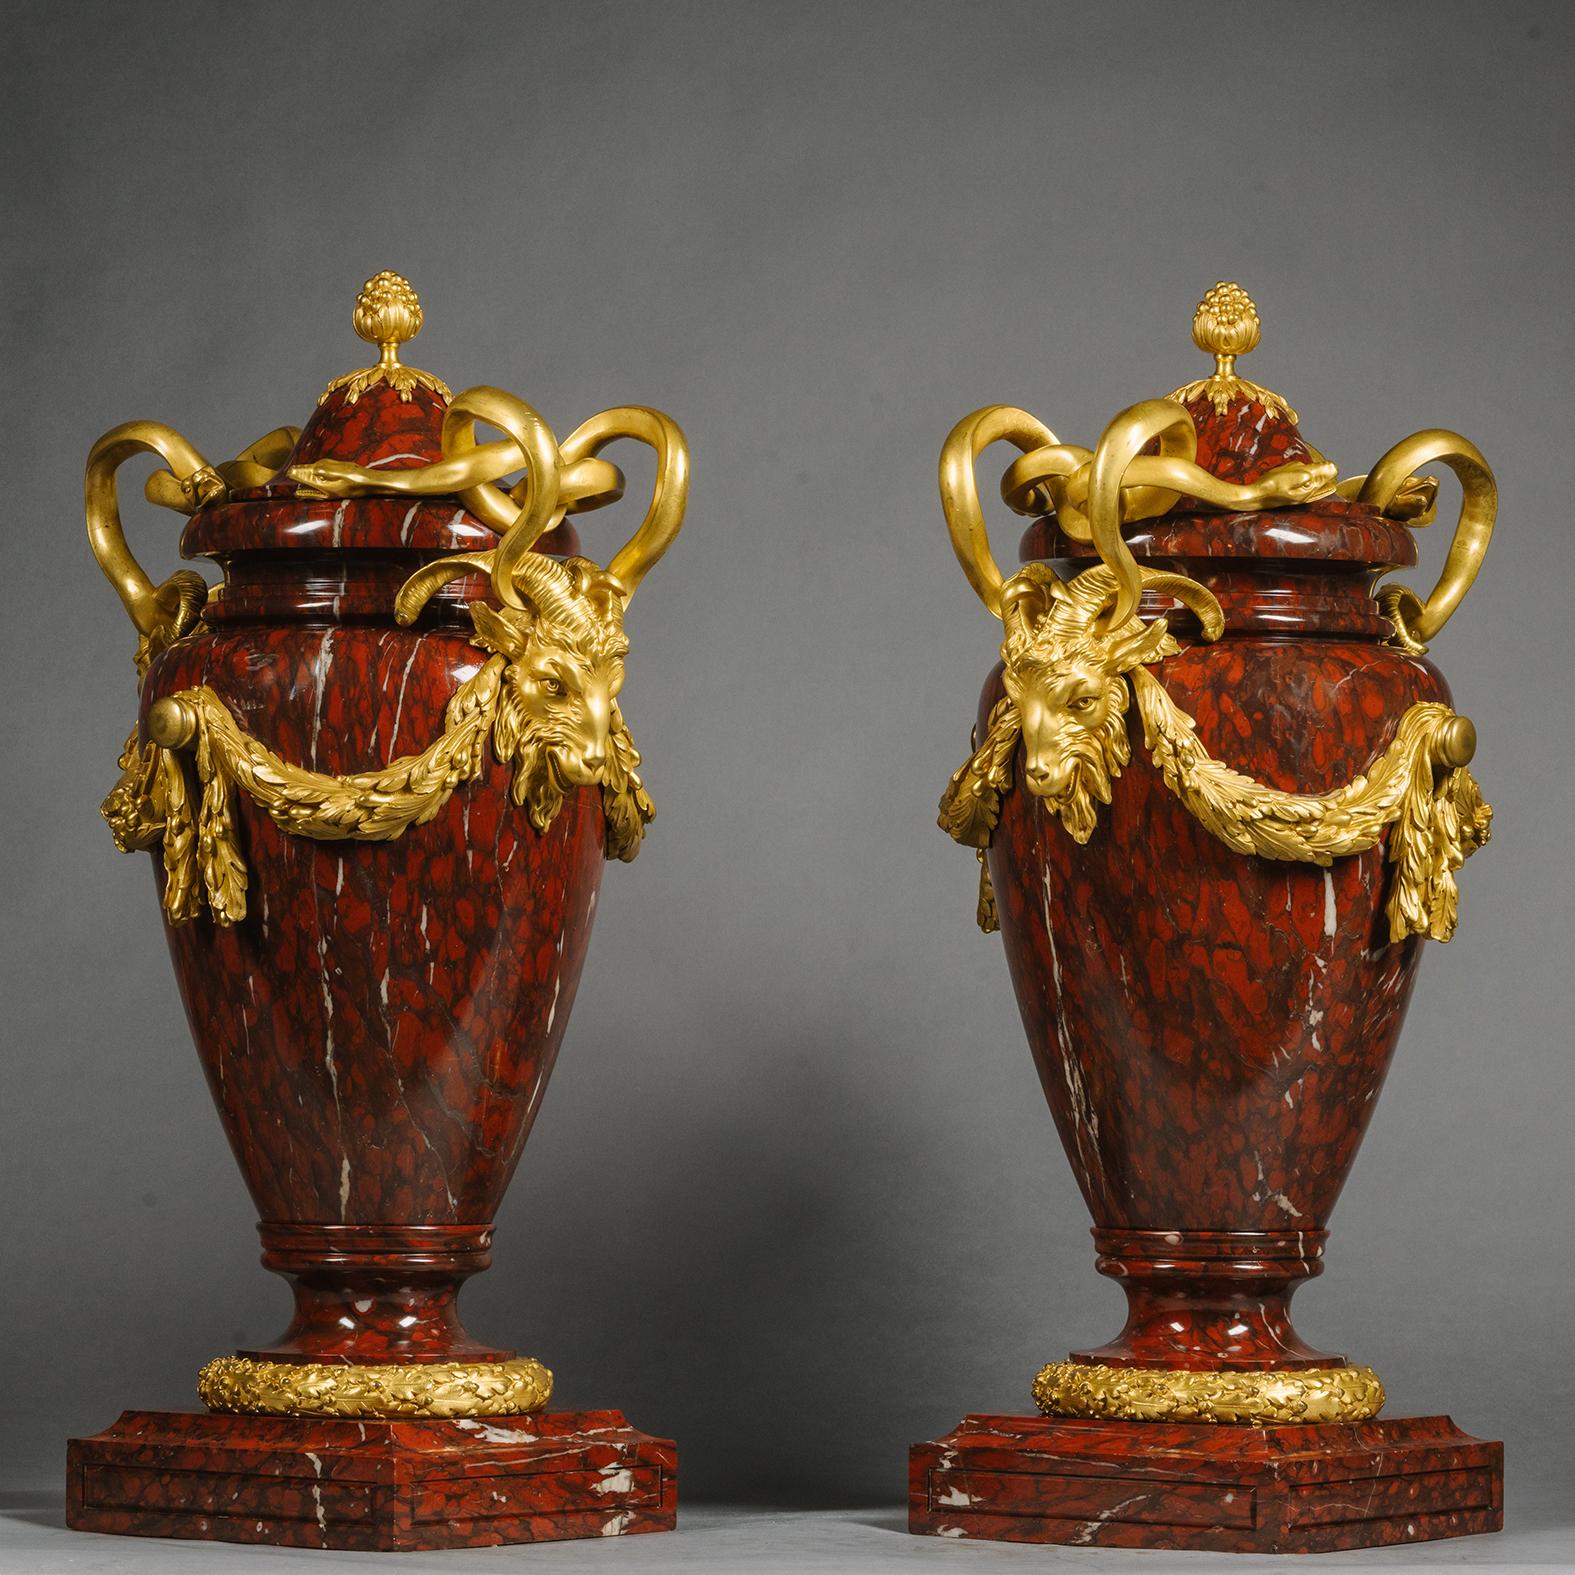 Paire de grands vases et couvercles de style Louis XVI montés en bronze doré et en rouge griotte. 

Conçue dans le style néoclassique avec des poignées de serpent entrelacées au-dessus de masques de bélier reliés par des guirlandes d'acanthe. Ces